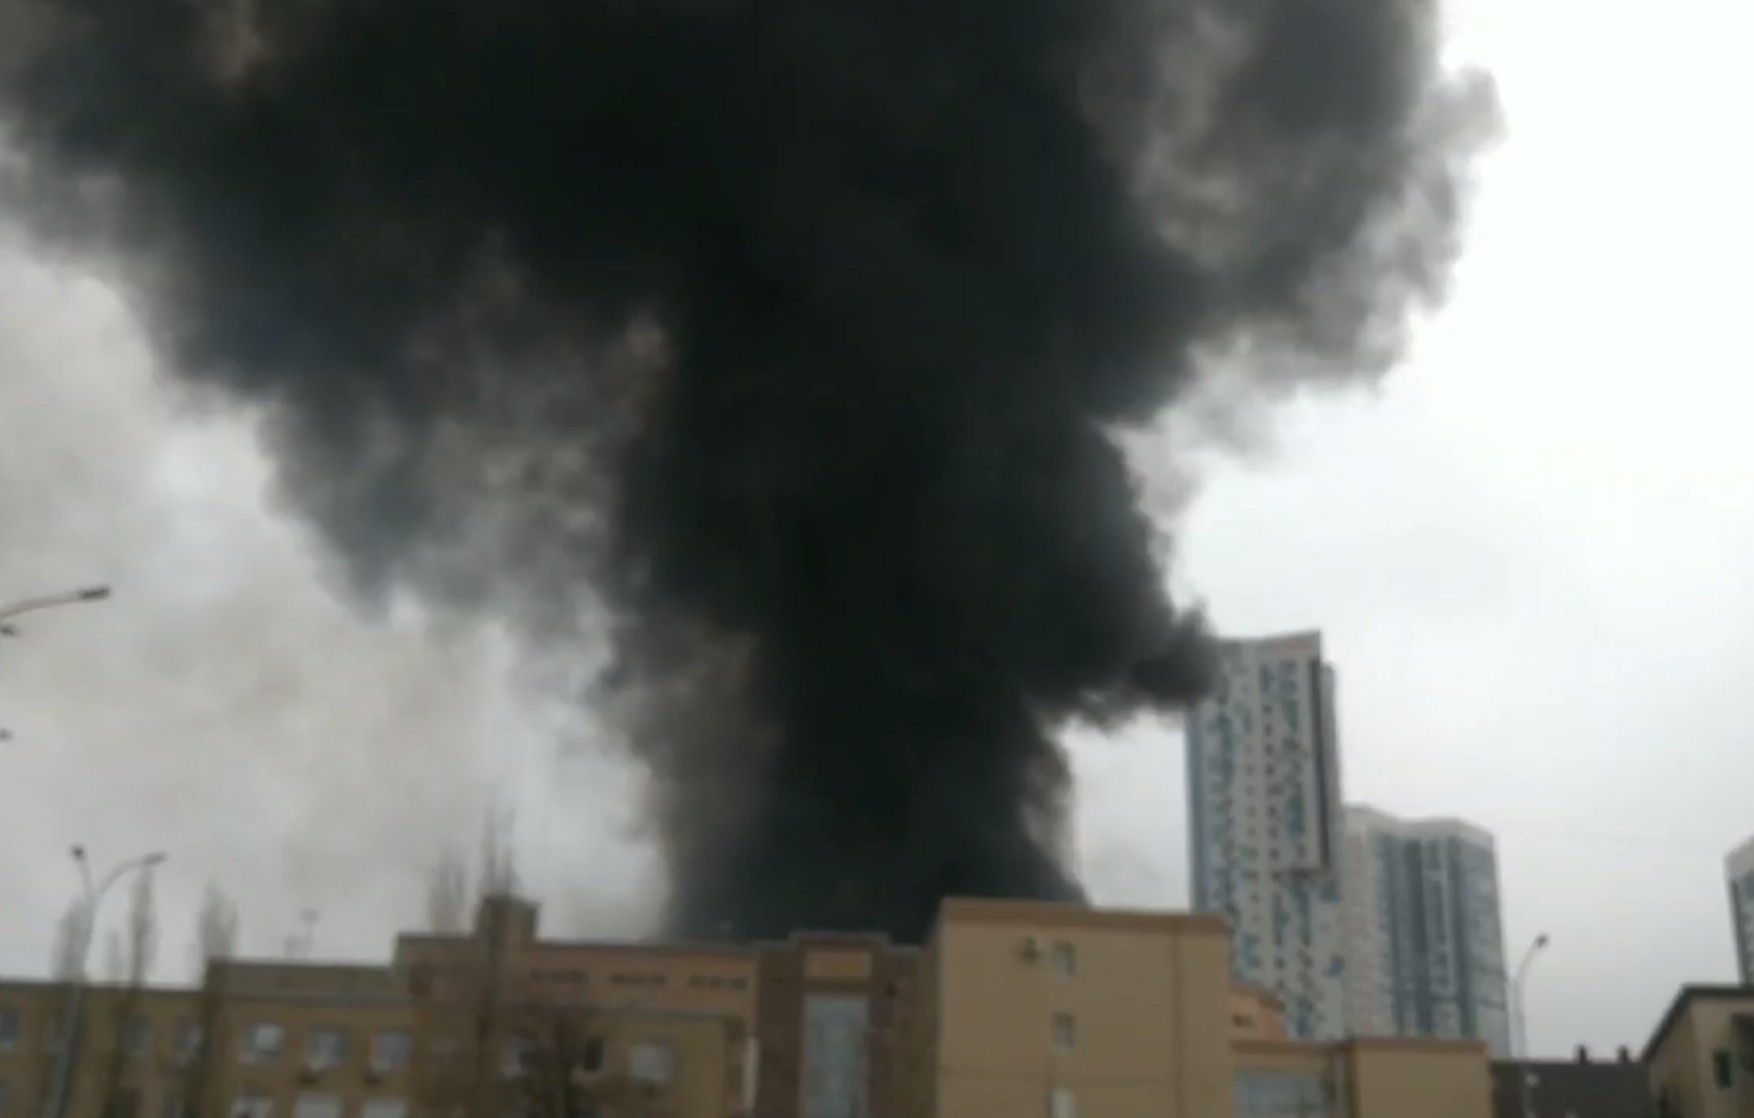 В здании ФСБ в Ростове-на-Дону произошел пожар — видео